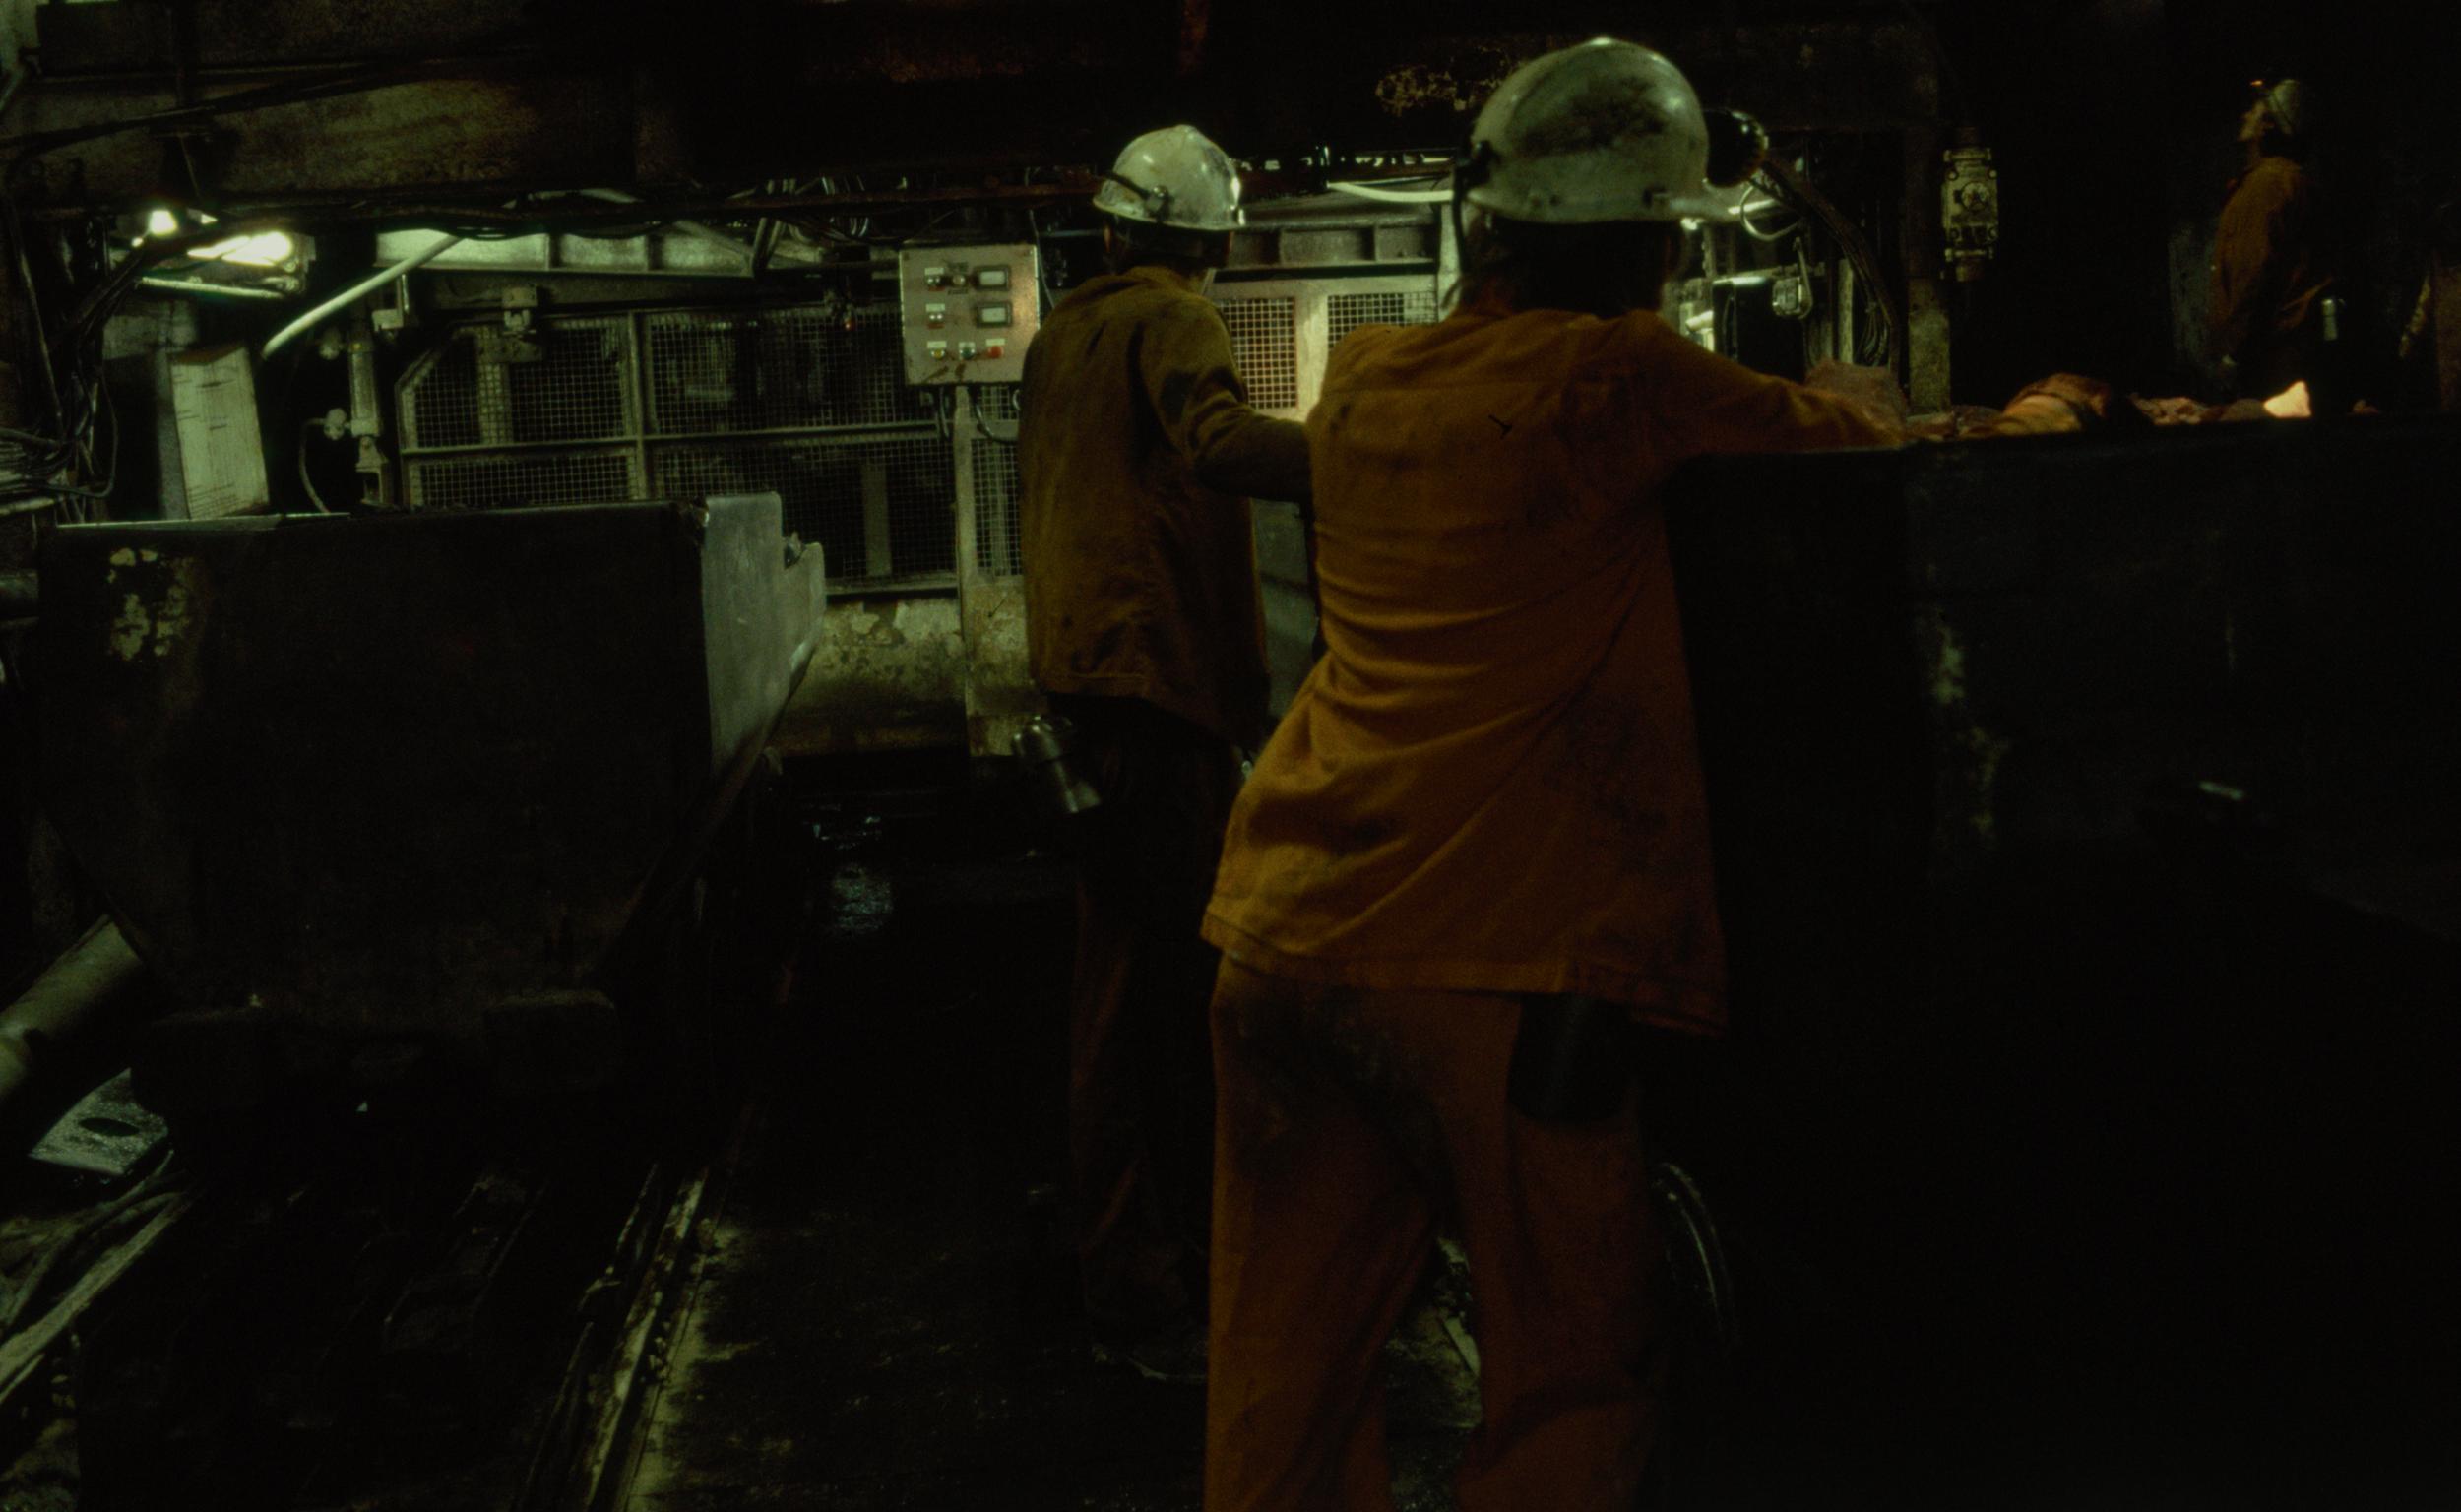 Oakdale Colliery, film slide